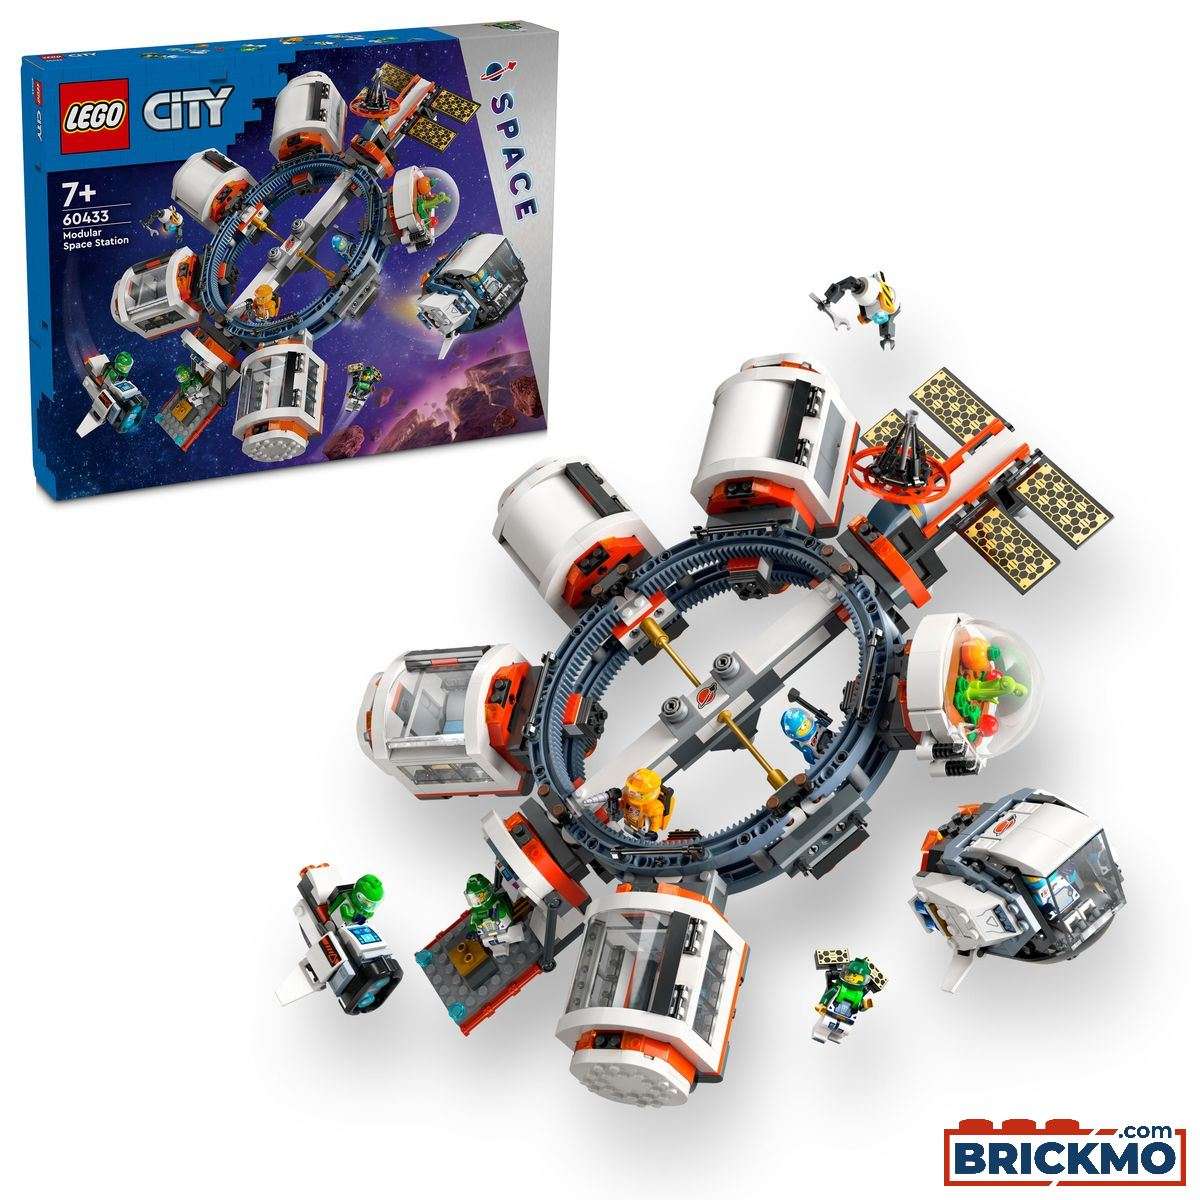 LEGO City 60433 Stazione spaziale modulare 60433